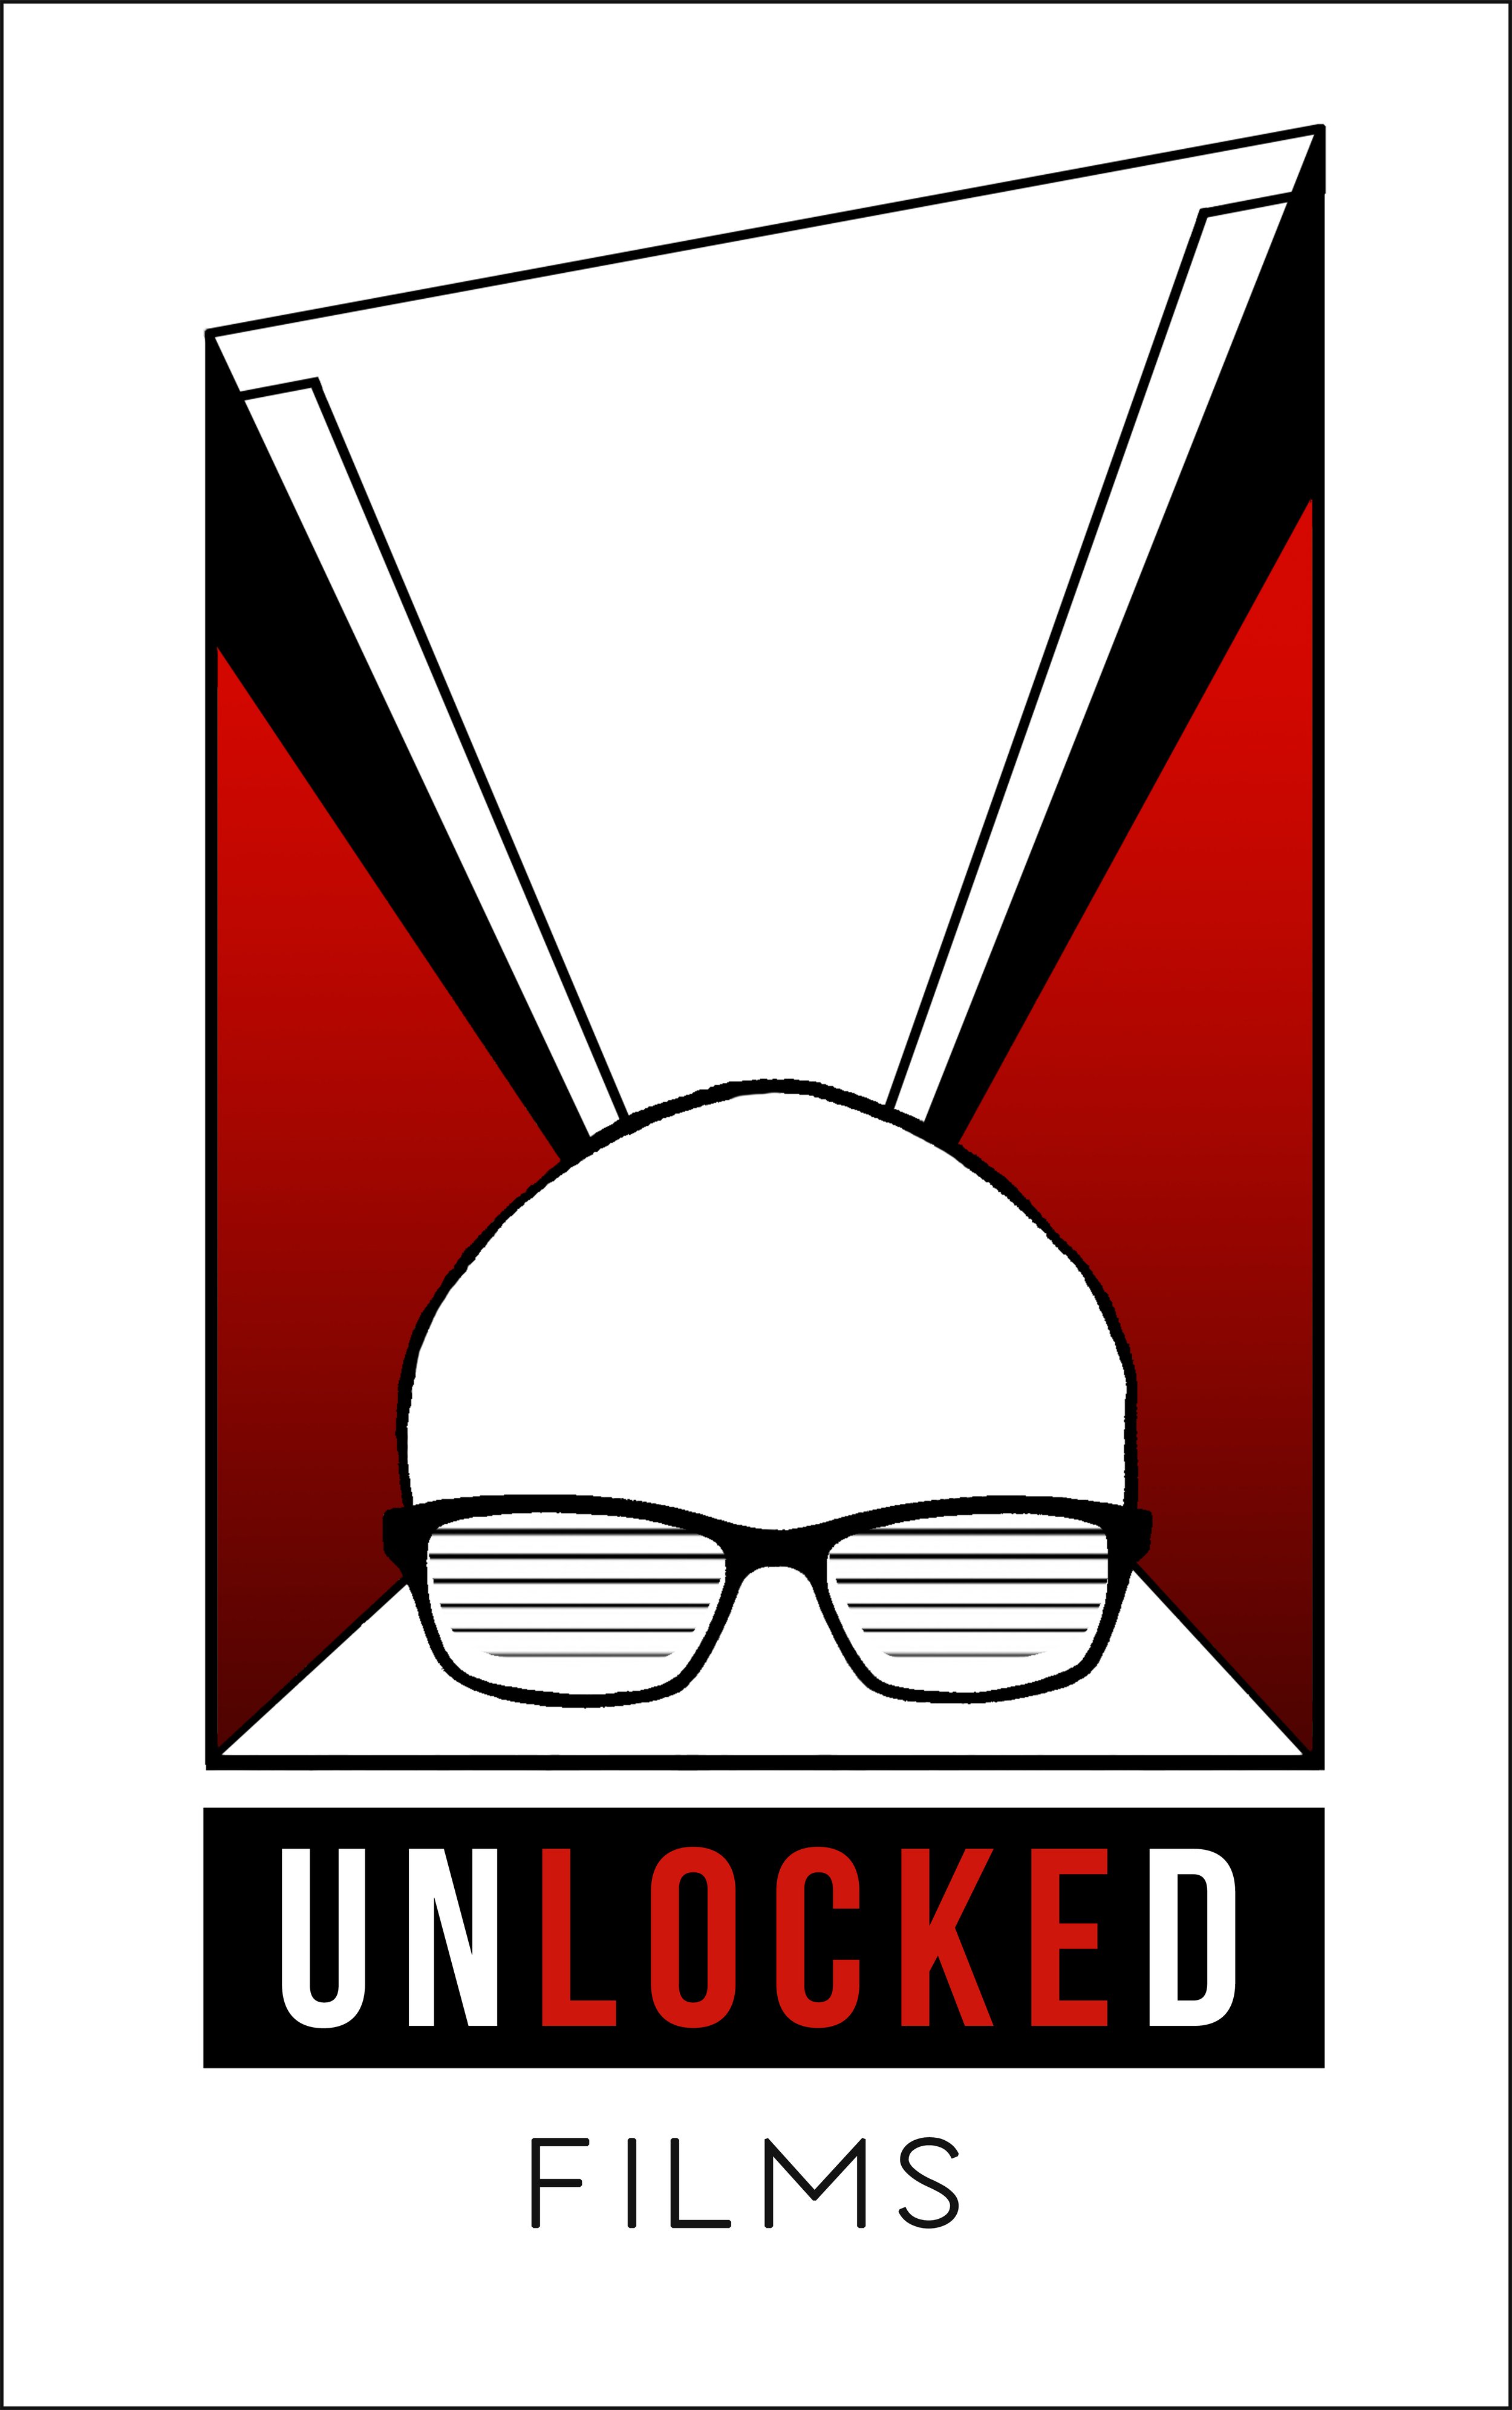 unlocked films